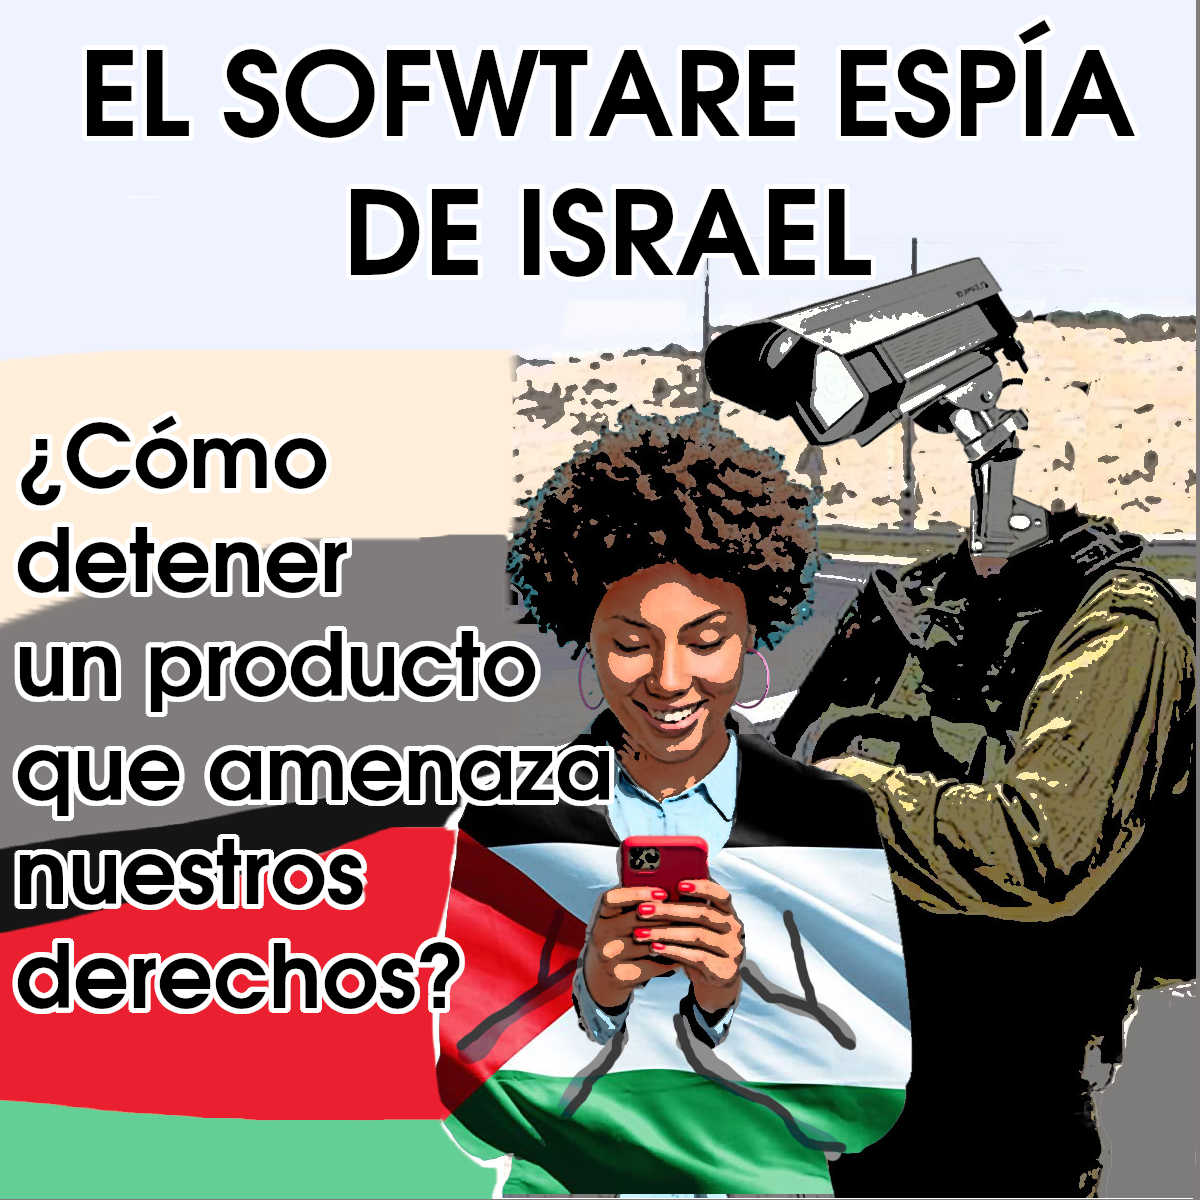 El software espía de Israel: ¿cómo detener un producto que amenaza nuestros derechos?